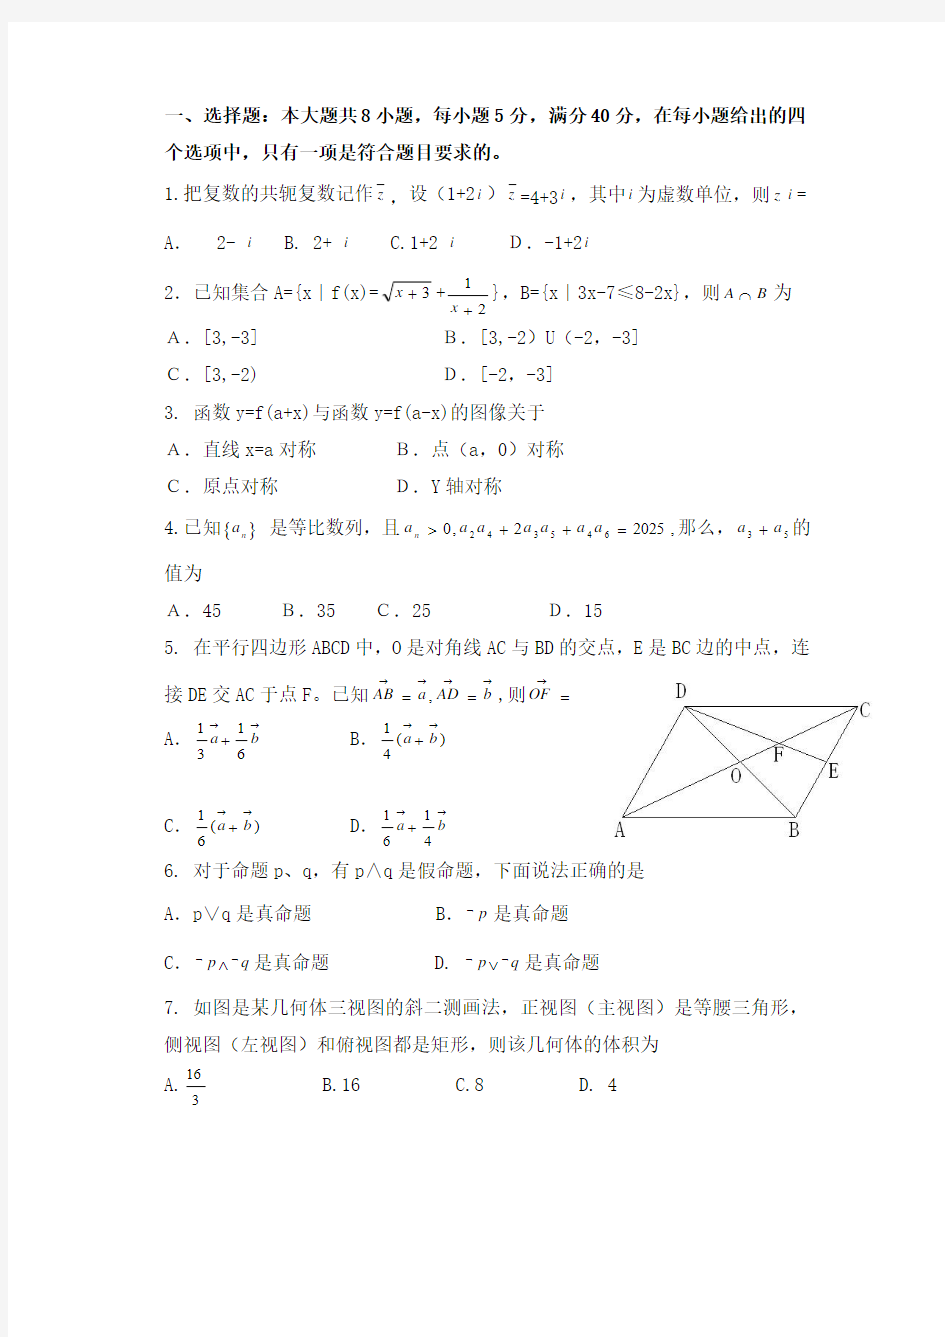 2012年广东高考理科数学试题及答案(含答案)